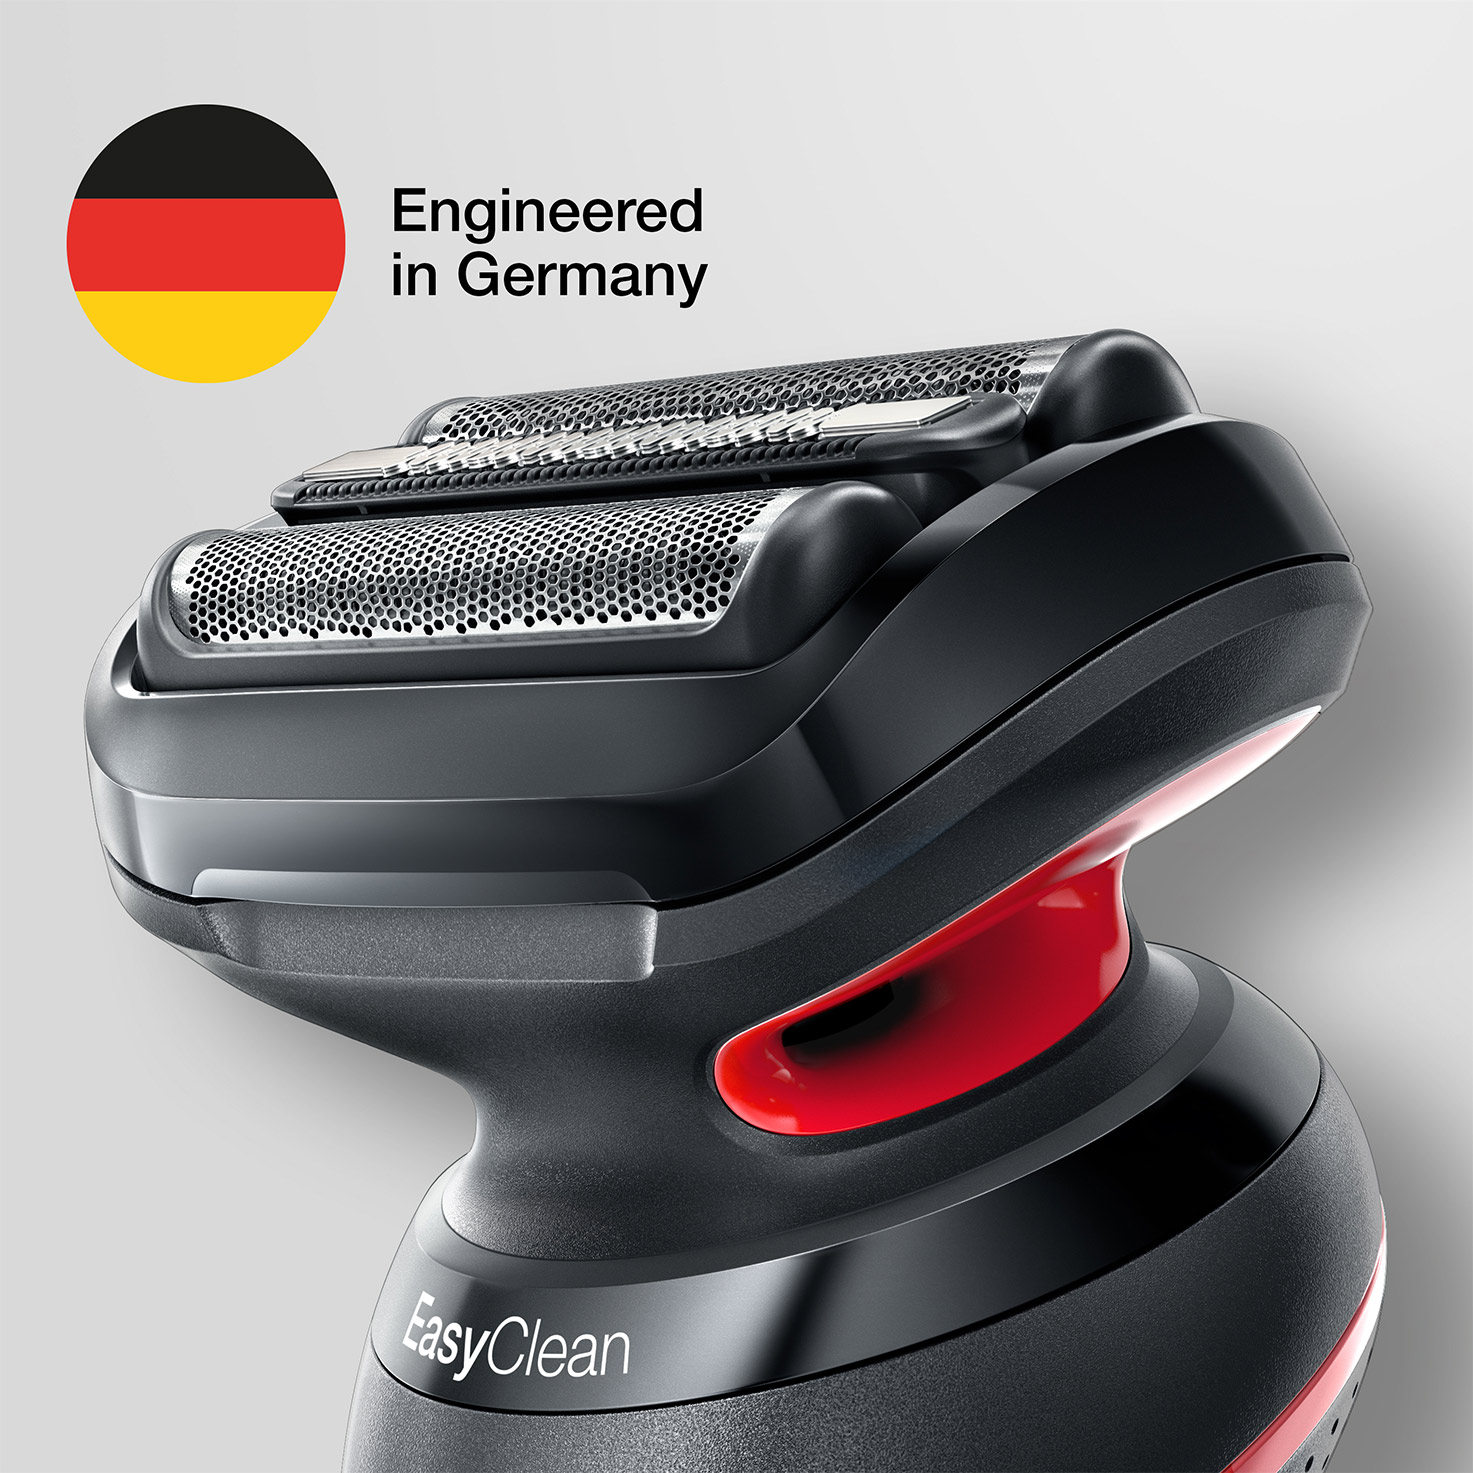 Zaprojektowana w Niemczech